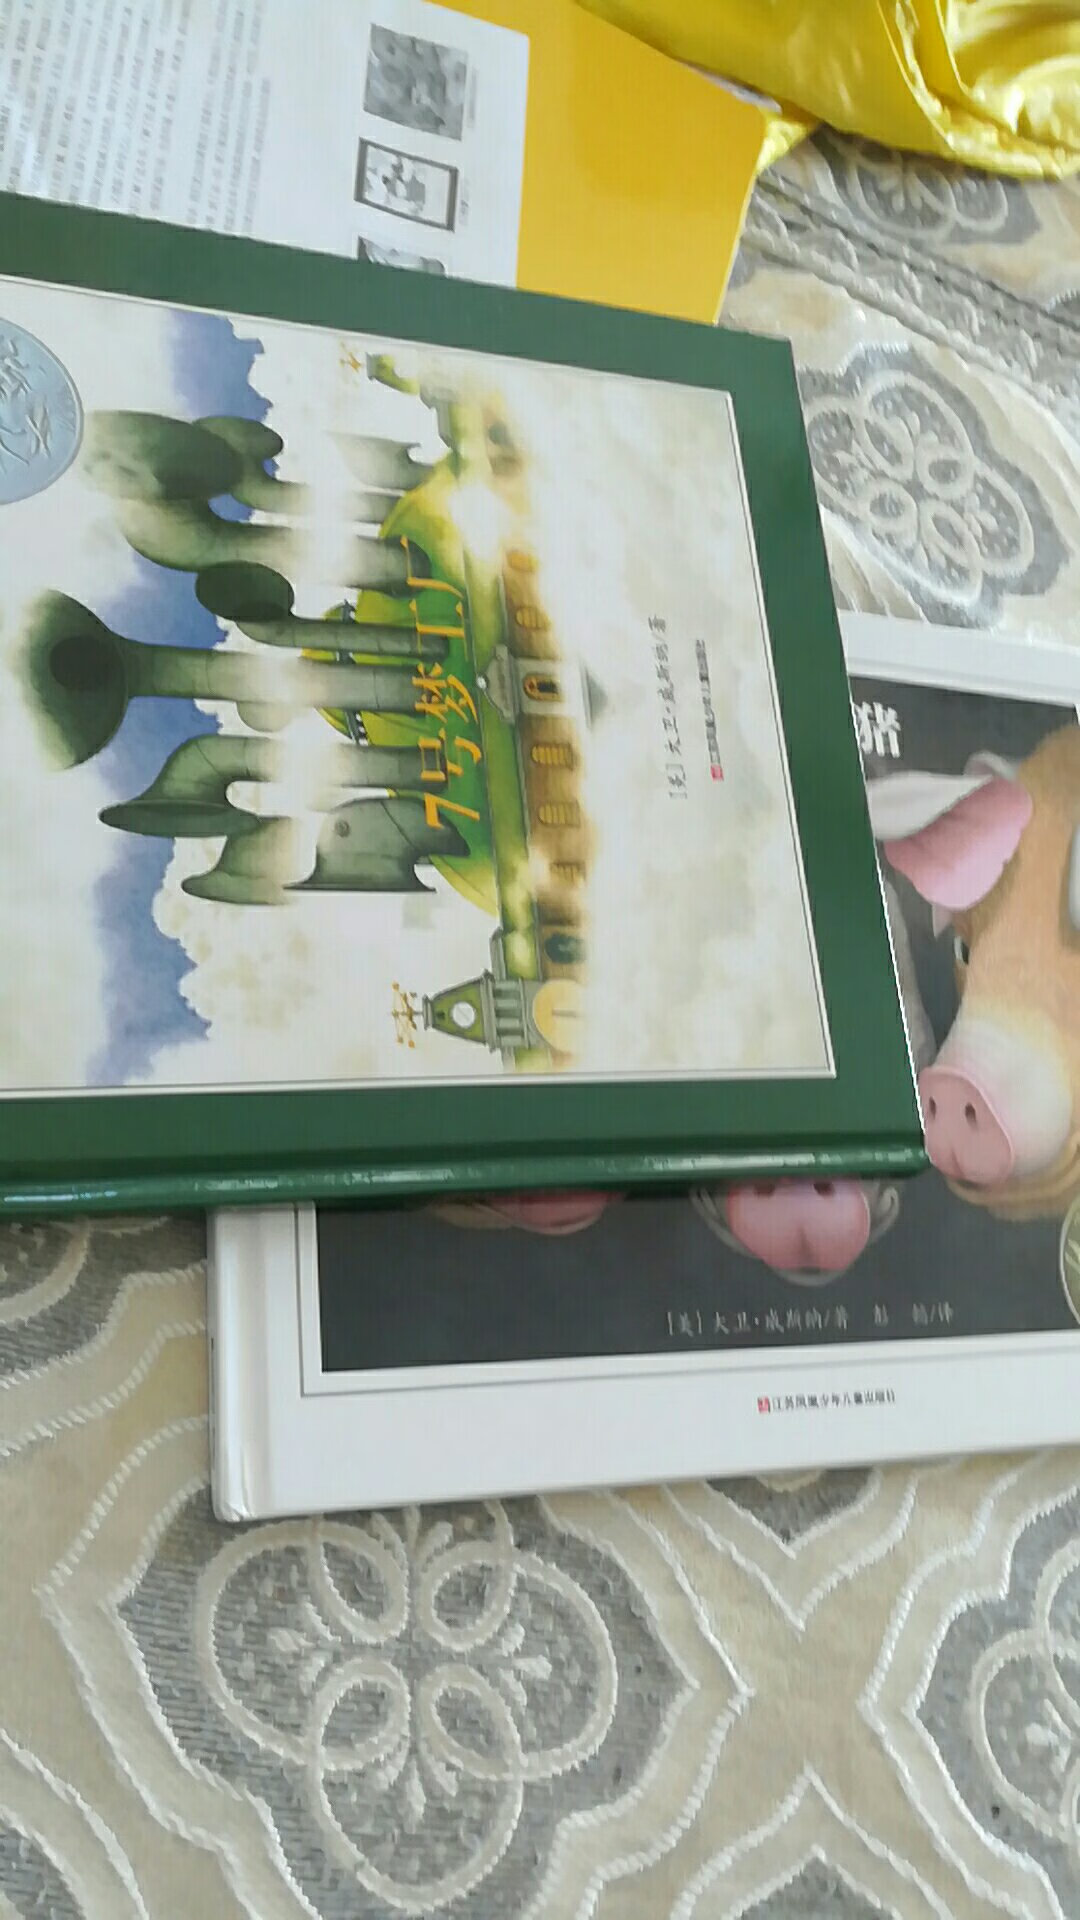 非常好的书，孩子很喜欢看，尤其是三只小猪，一样的故事，意想不到的结局，真是无限想象